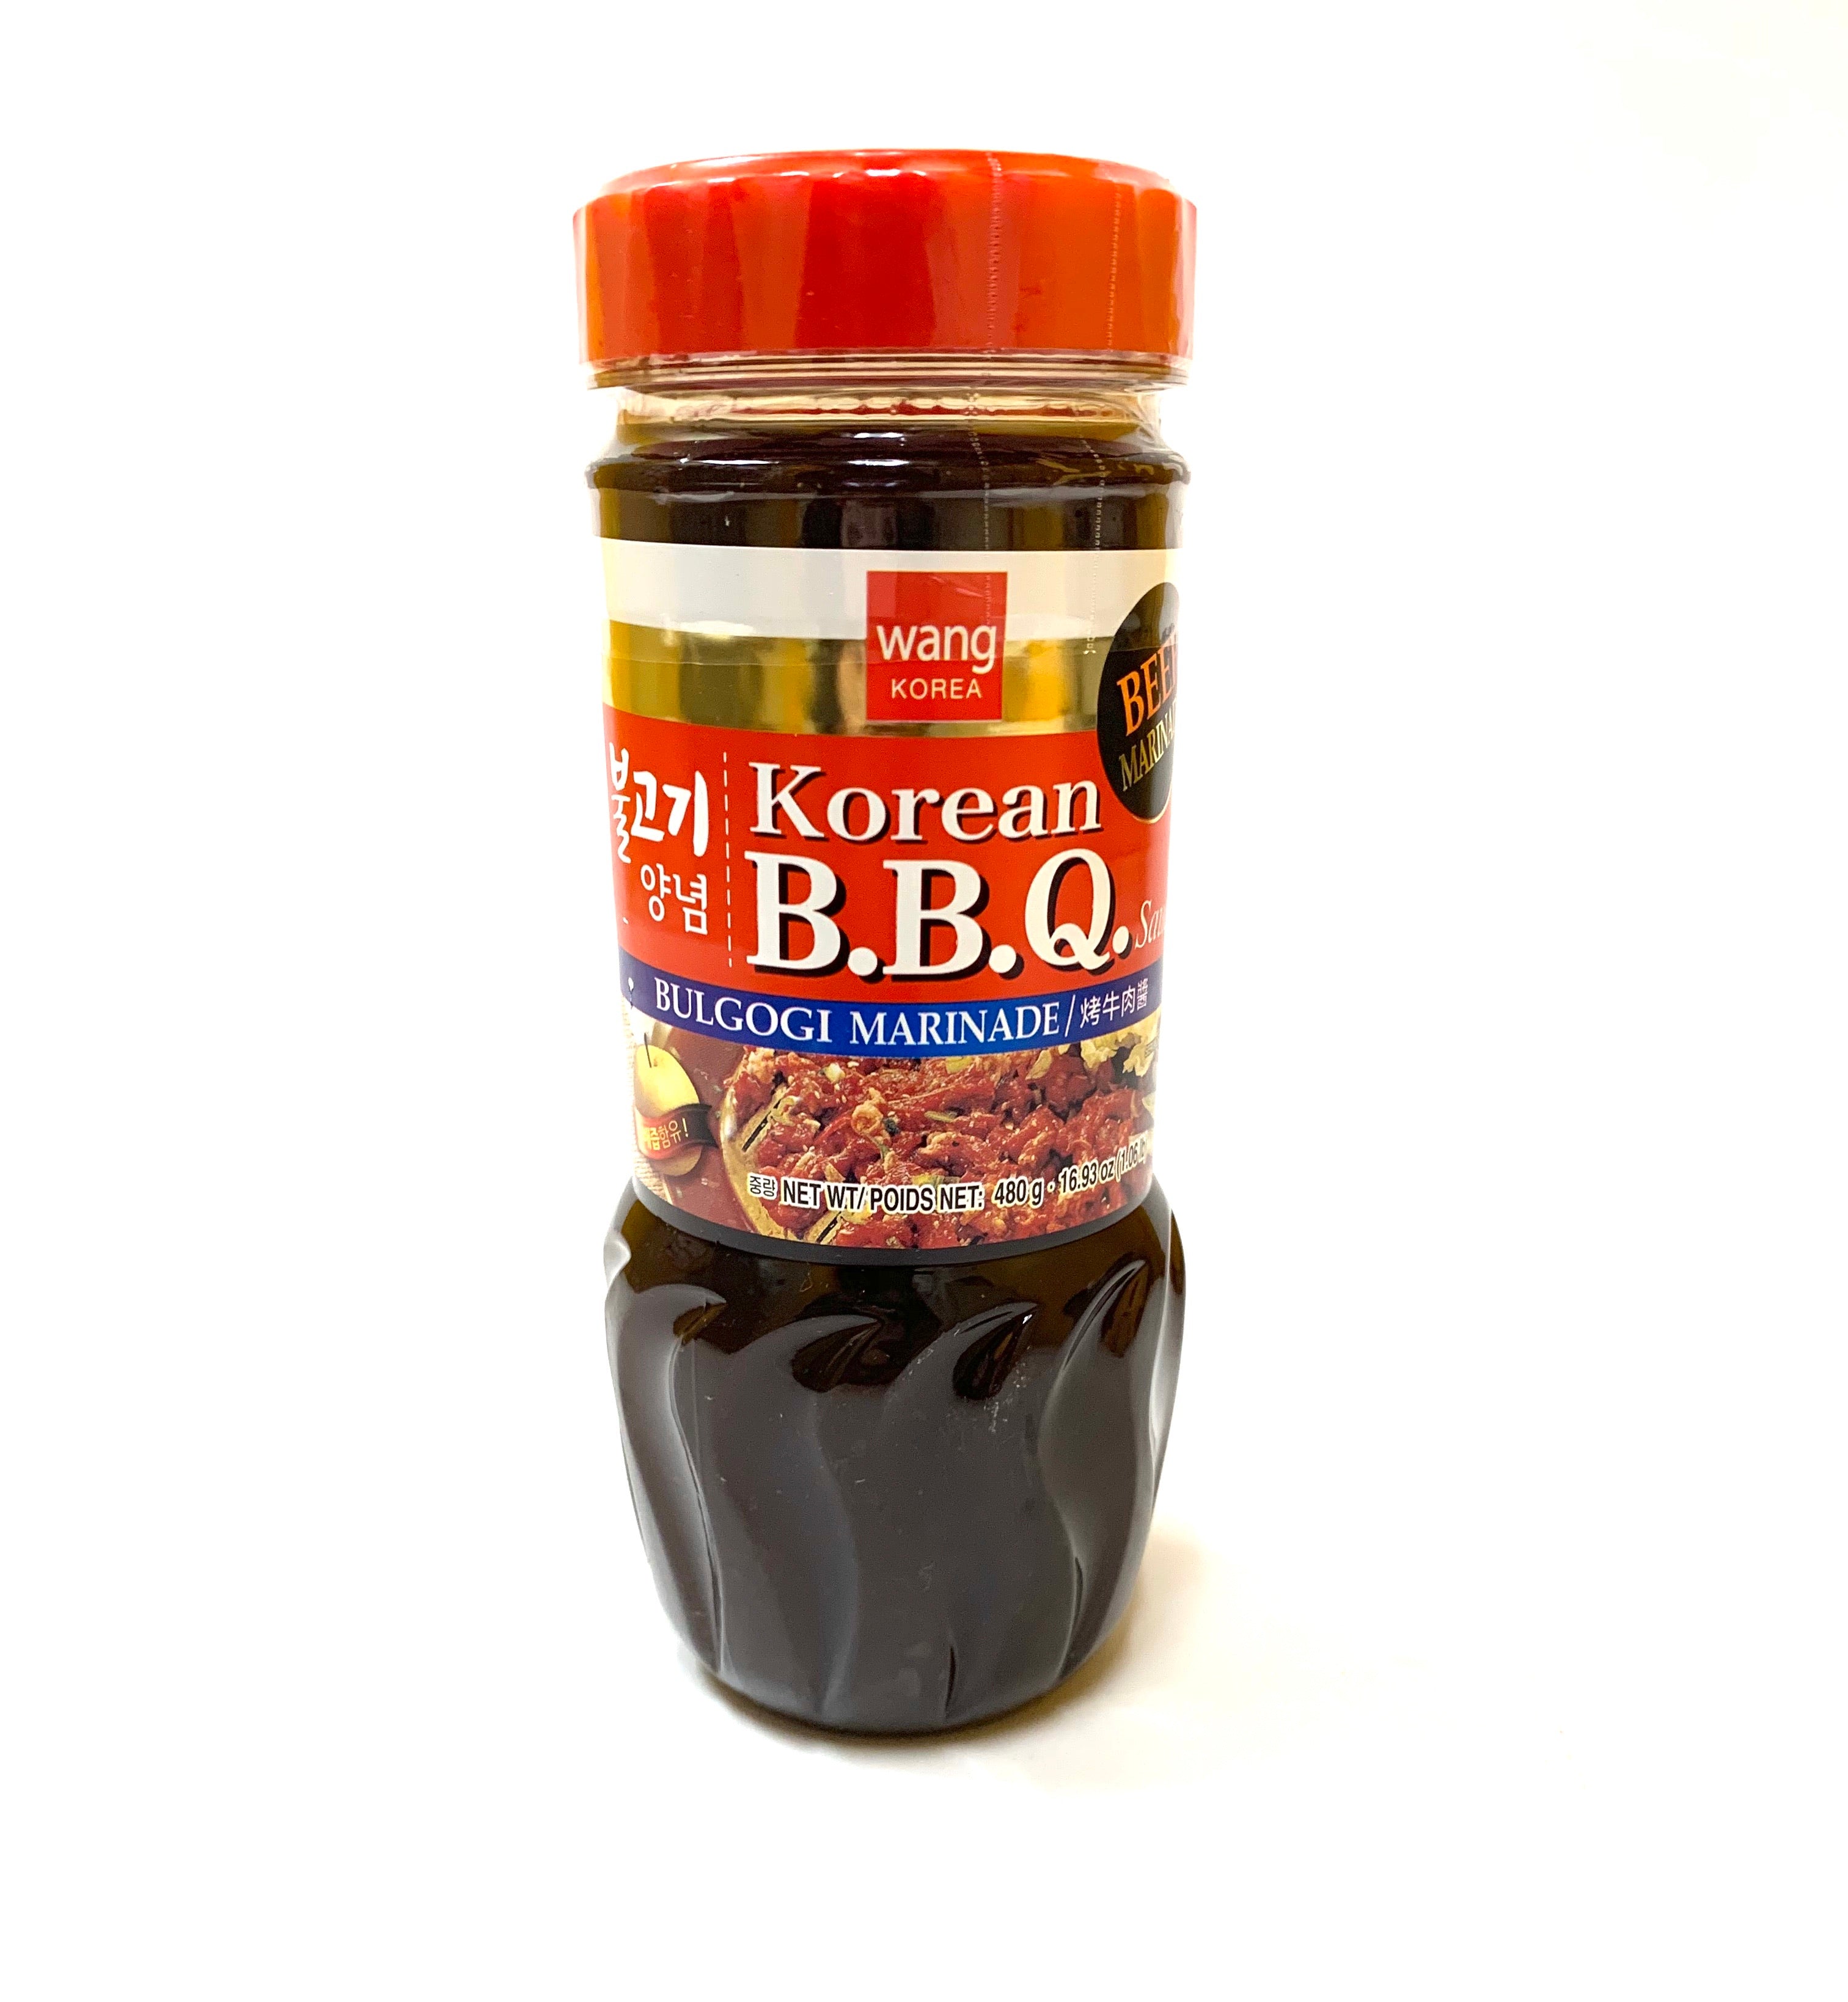 Wang Korean BBQ Sauce Bulgogi (beef) Marinade - 480g/16.93oz